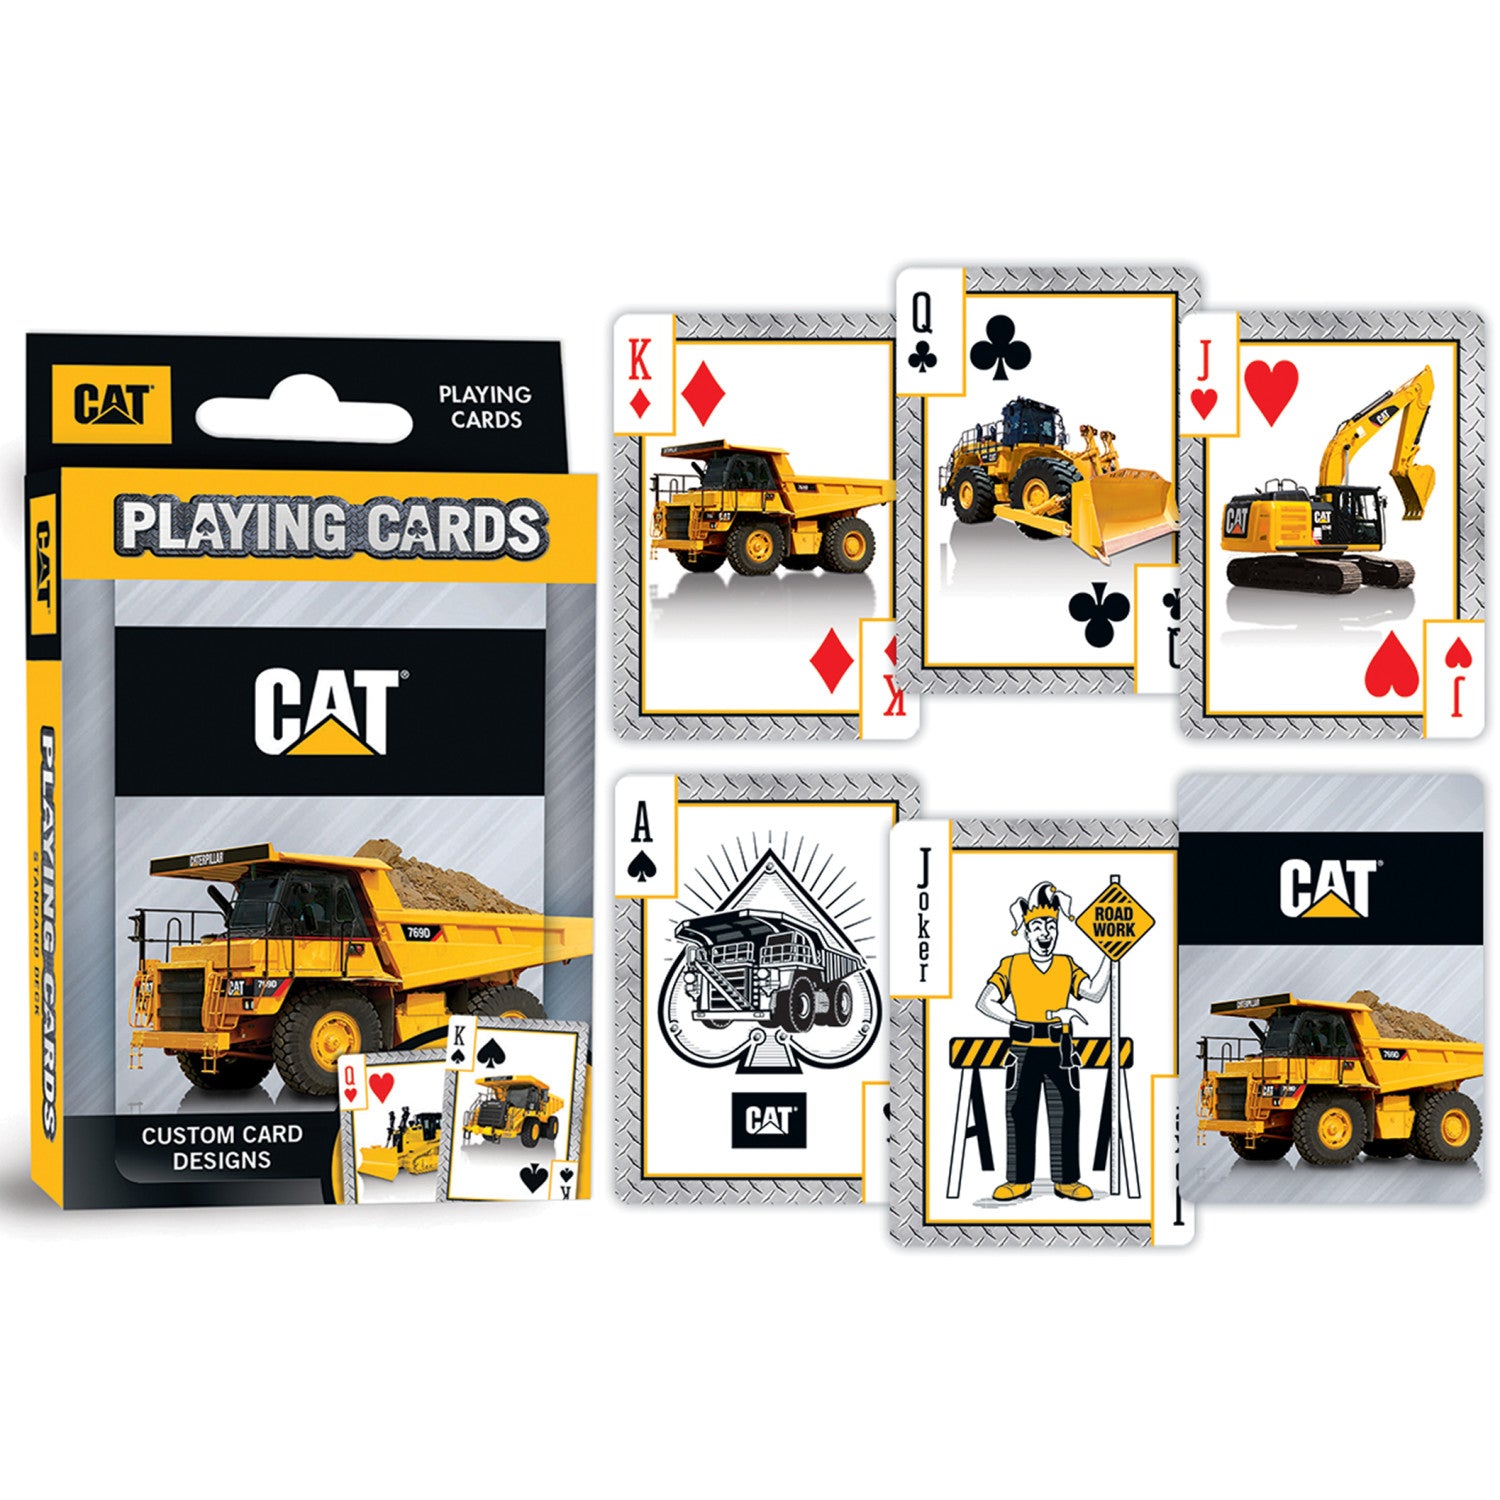 CAT - Caterpillar Playing Cards - 54 Card Deck